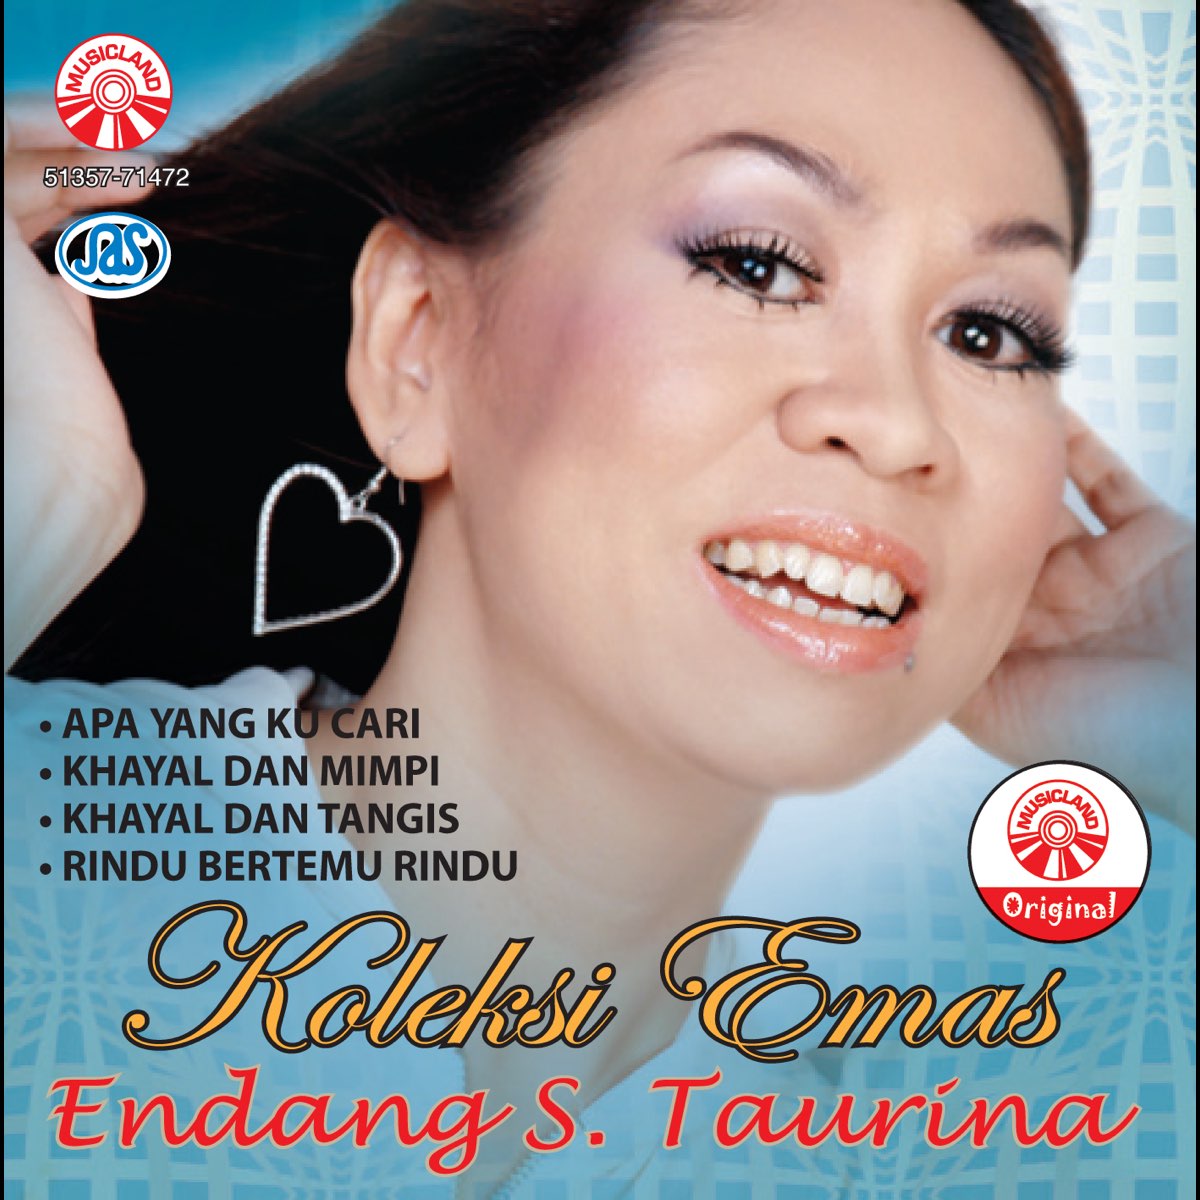 Koleksi Emas Endang S Taurina - Album by Endang S Taurina - Apple Music